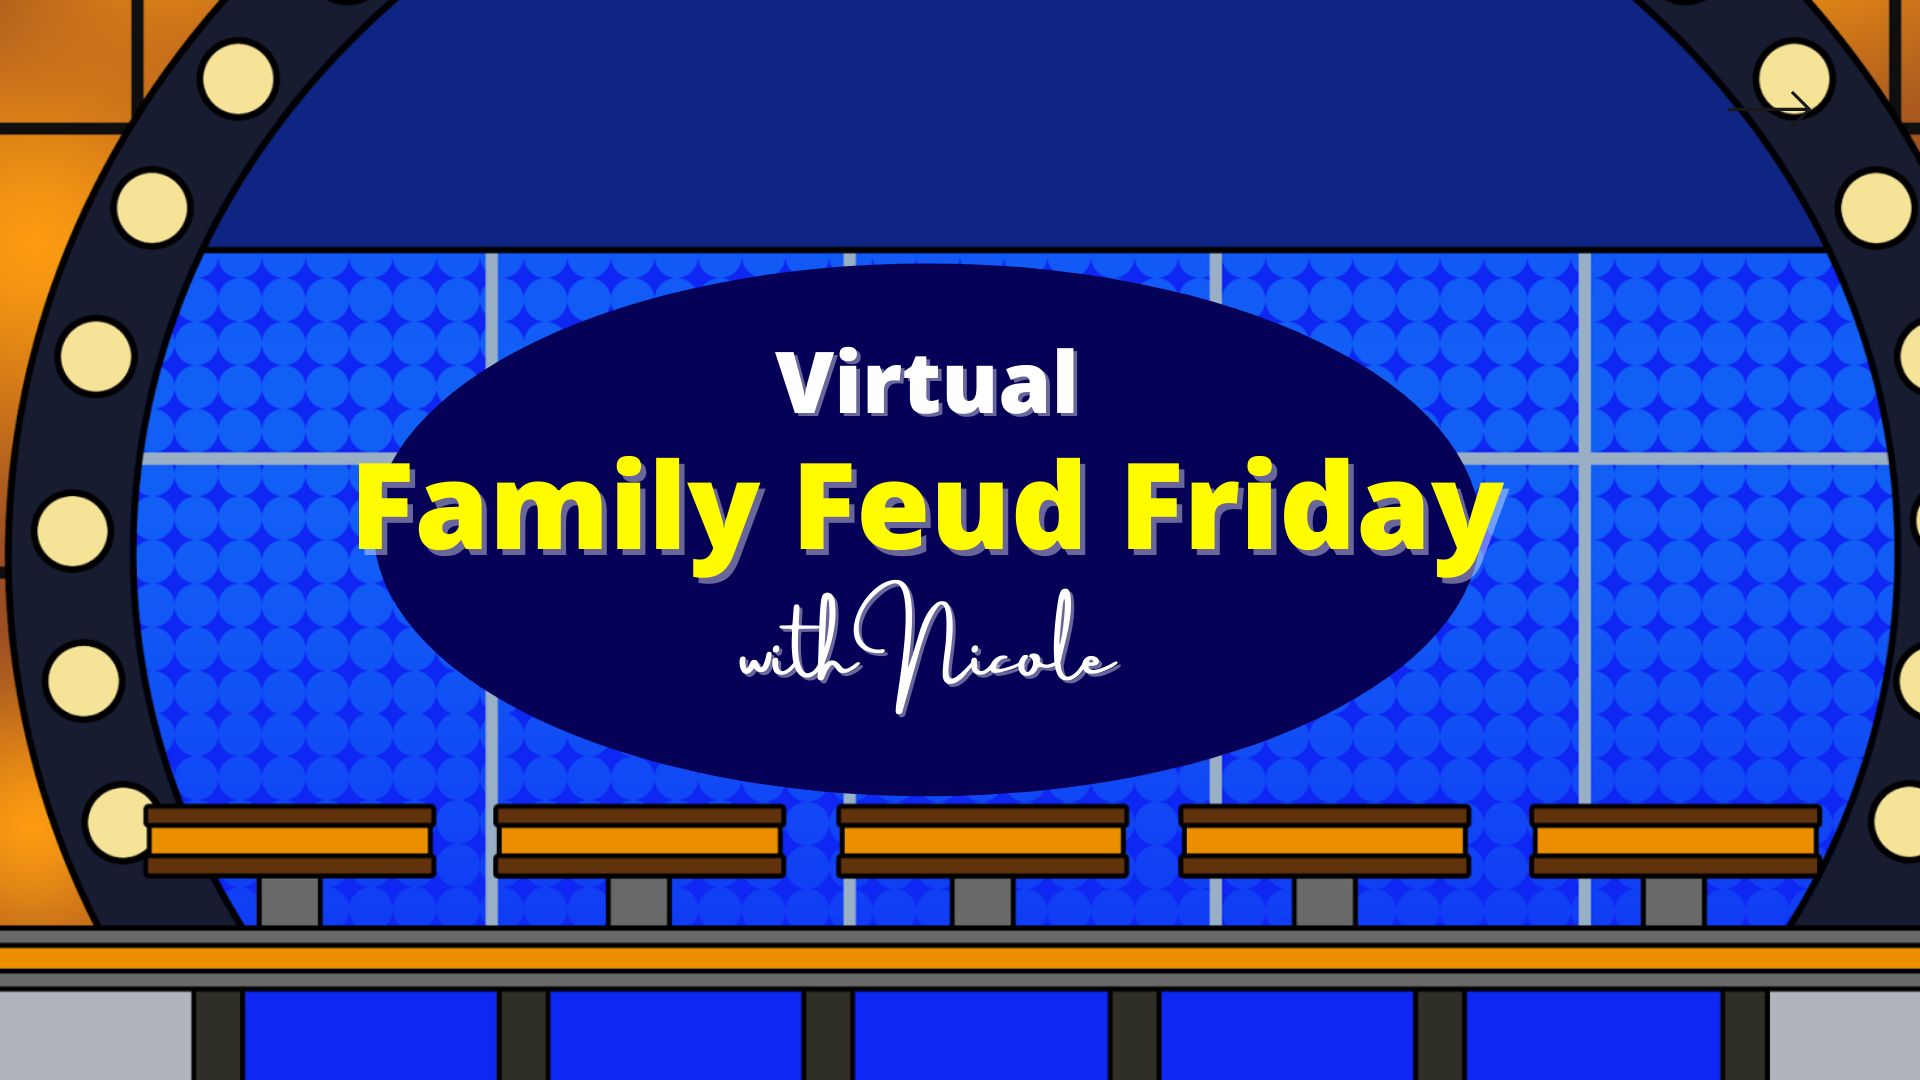 Family Feud Friday with Nicole, Orlando, Florida, United States